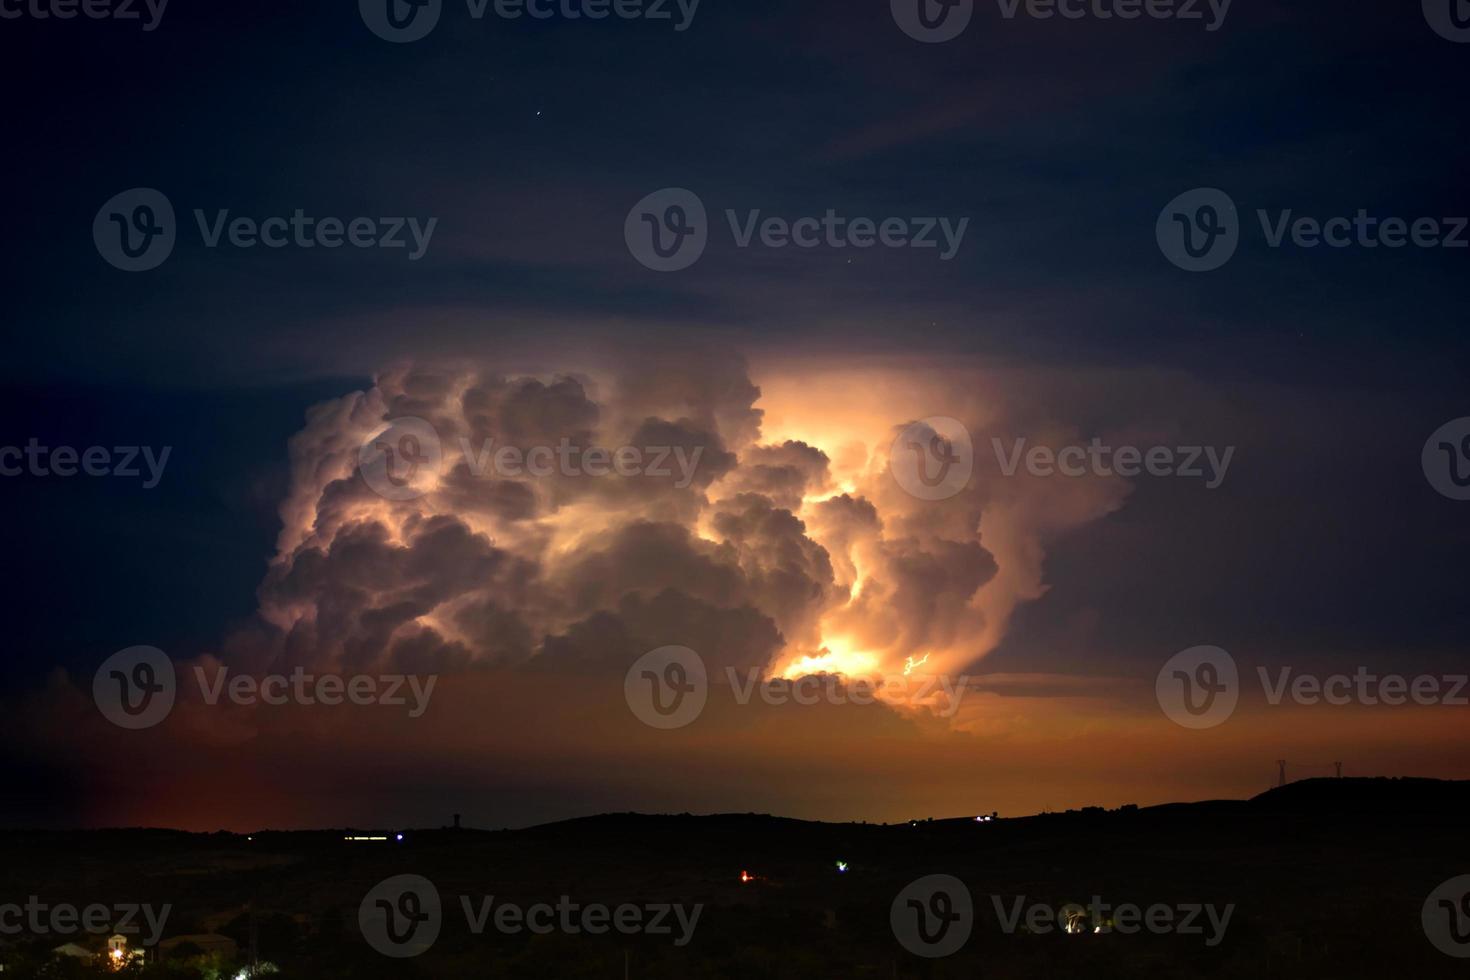 temporale, oscurità, nuvole scure tempestose che si muovono nel cielo, bassa velocità dell'otturatore. foto